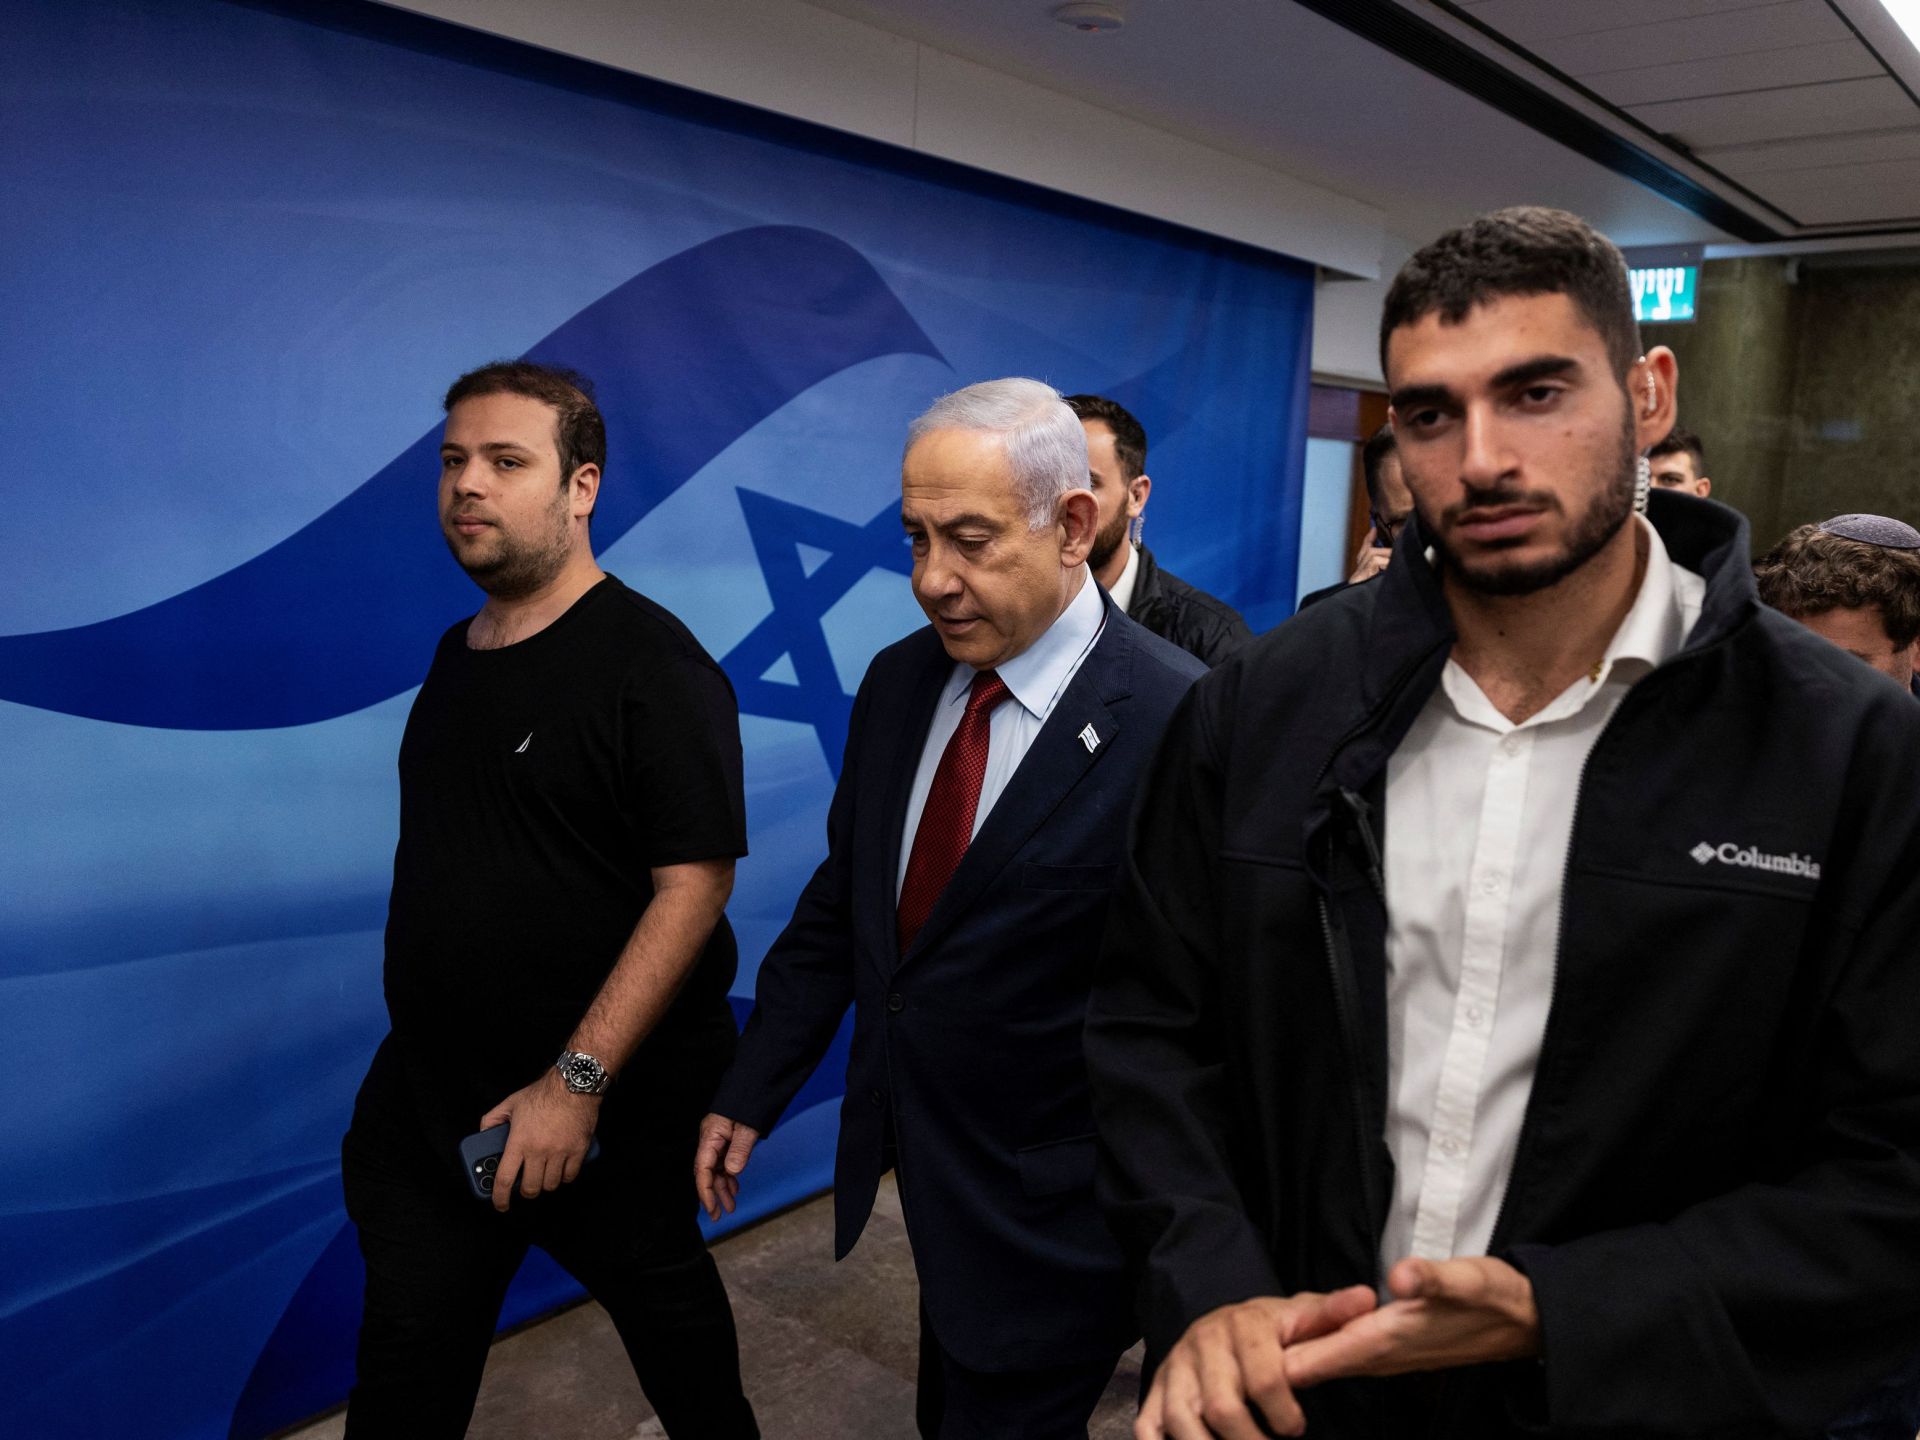 قلق إسرائيلي من تحديد واشنطن موعدا نهائيا للحرب بغزة | أخبار – البوكس نيوز